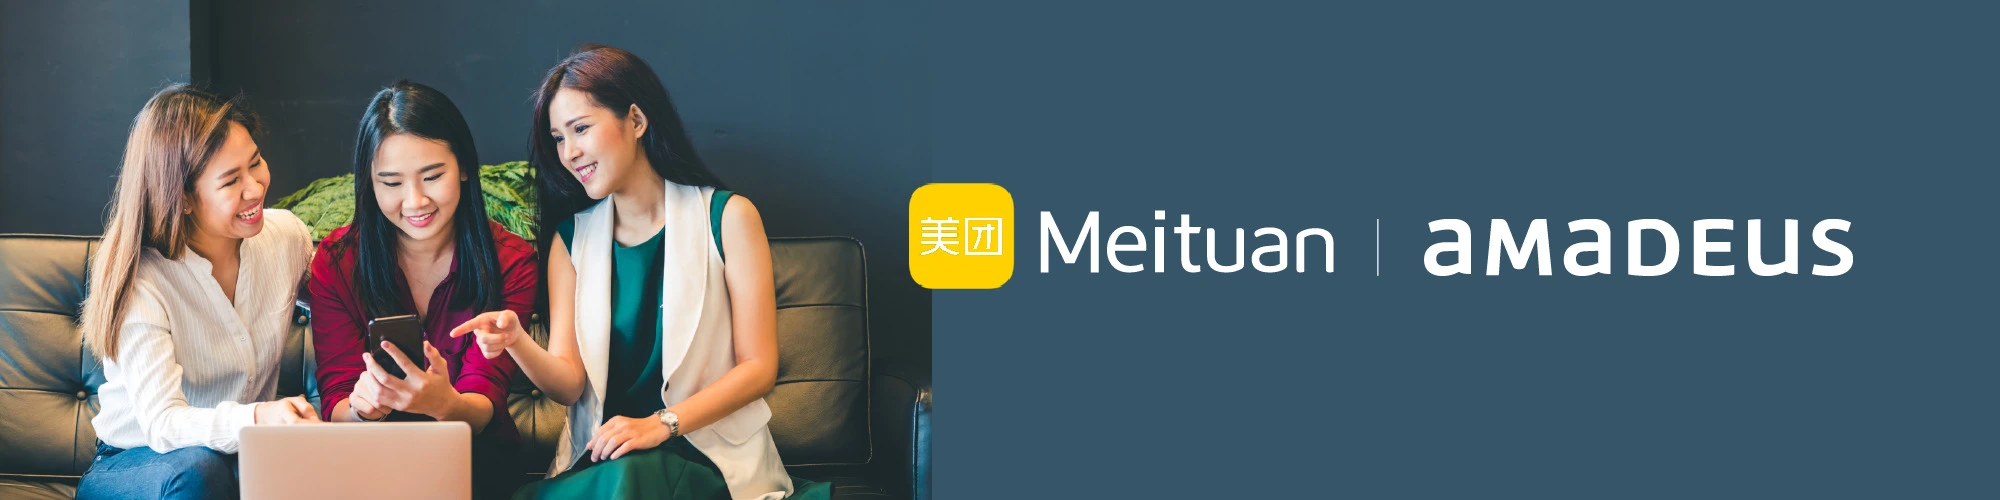 meituan-blog-header